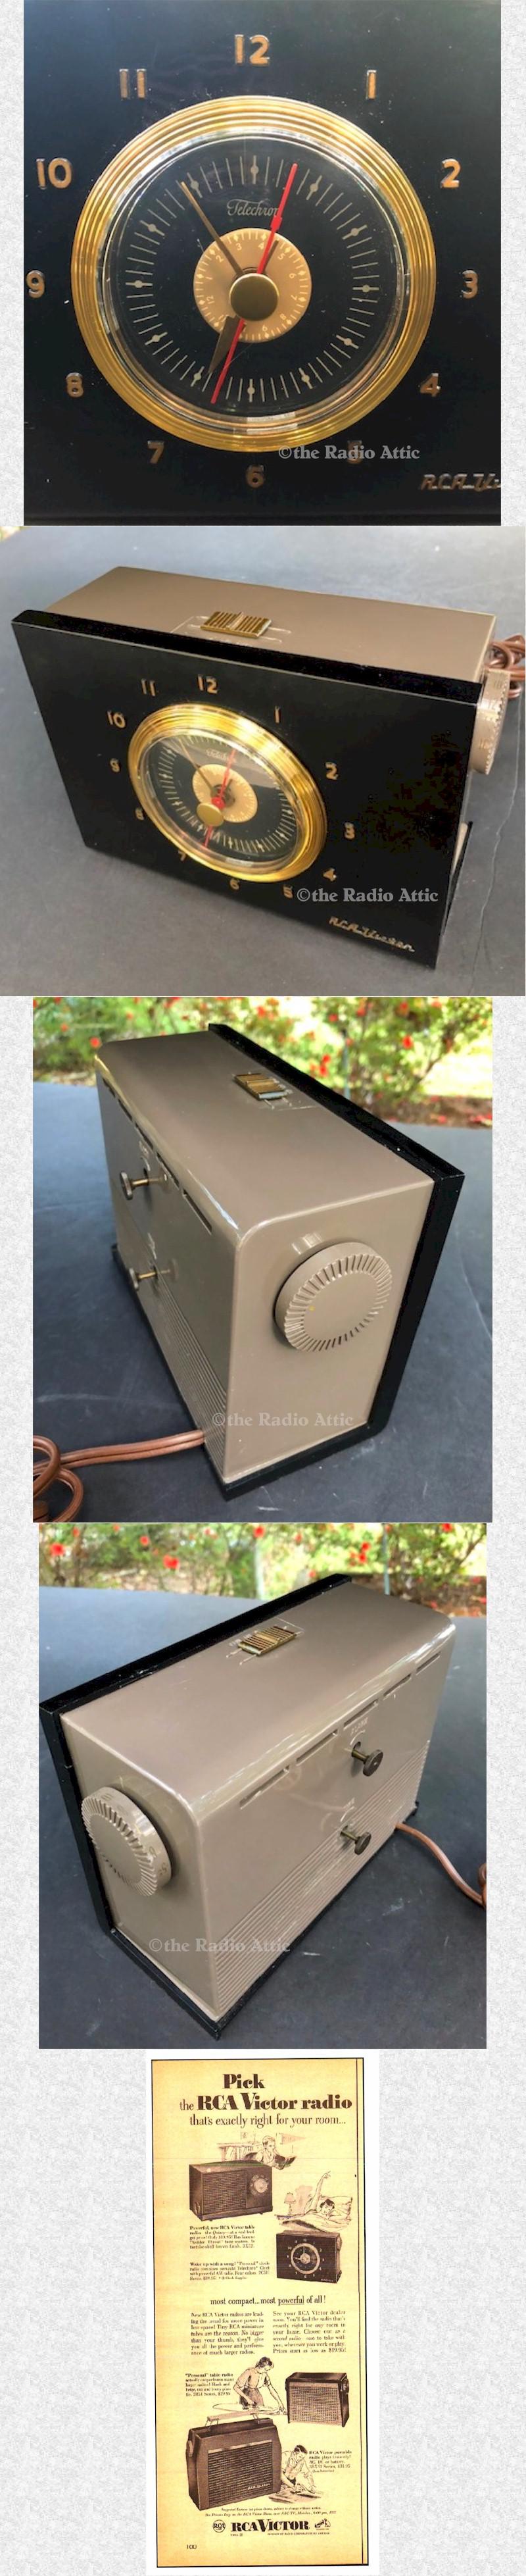 RCA 2-C-511 Clock Radio (1952)